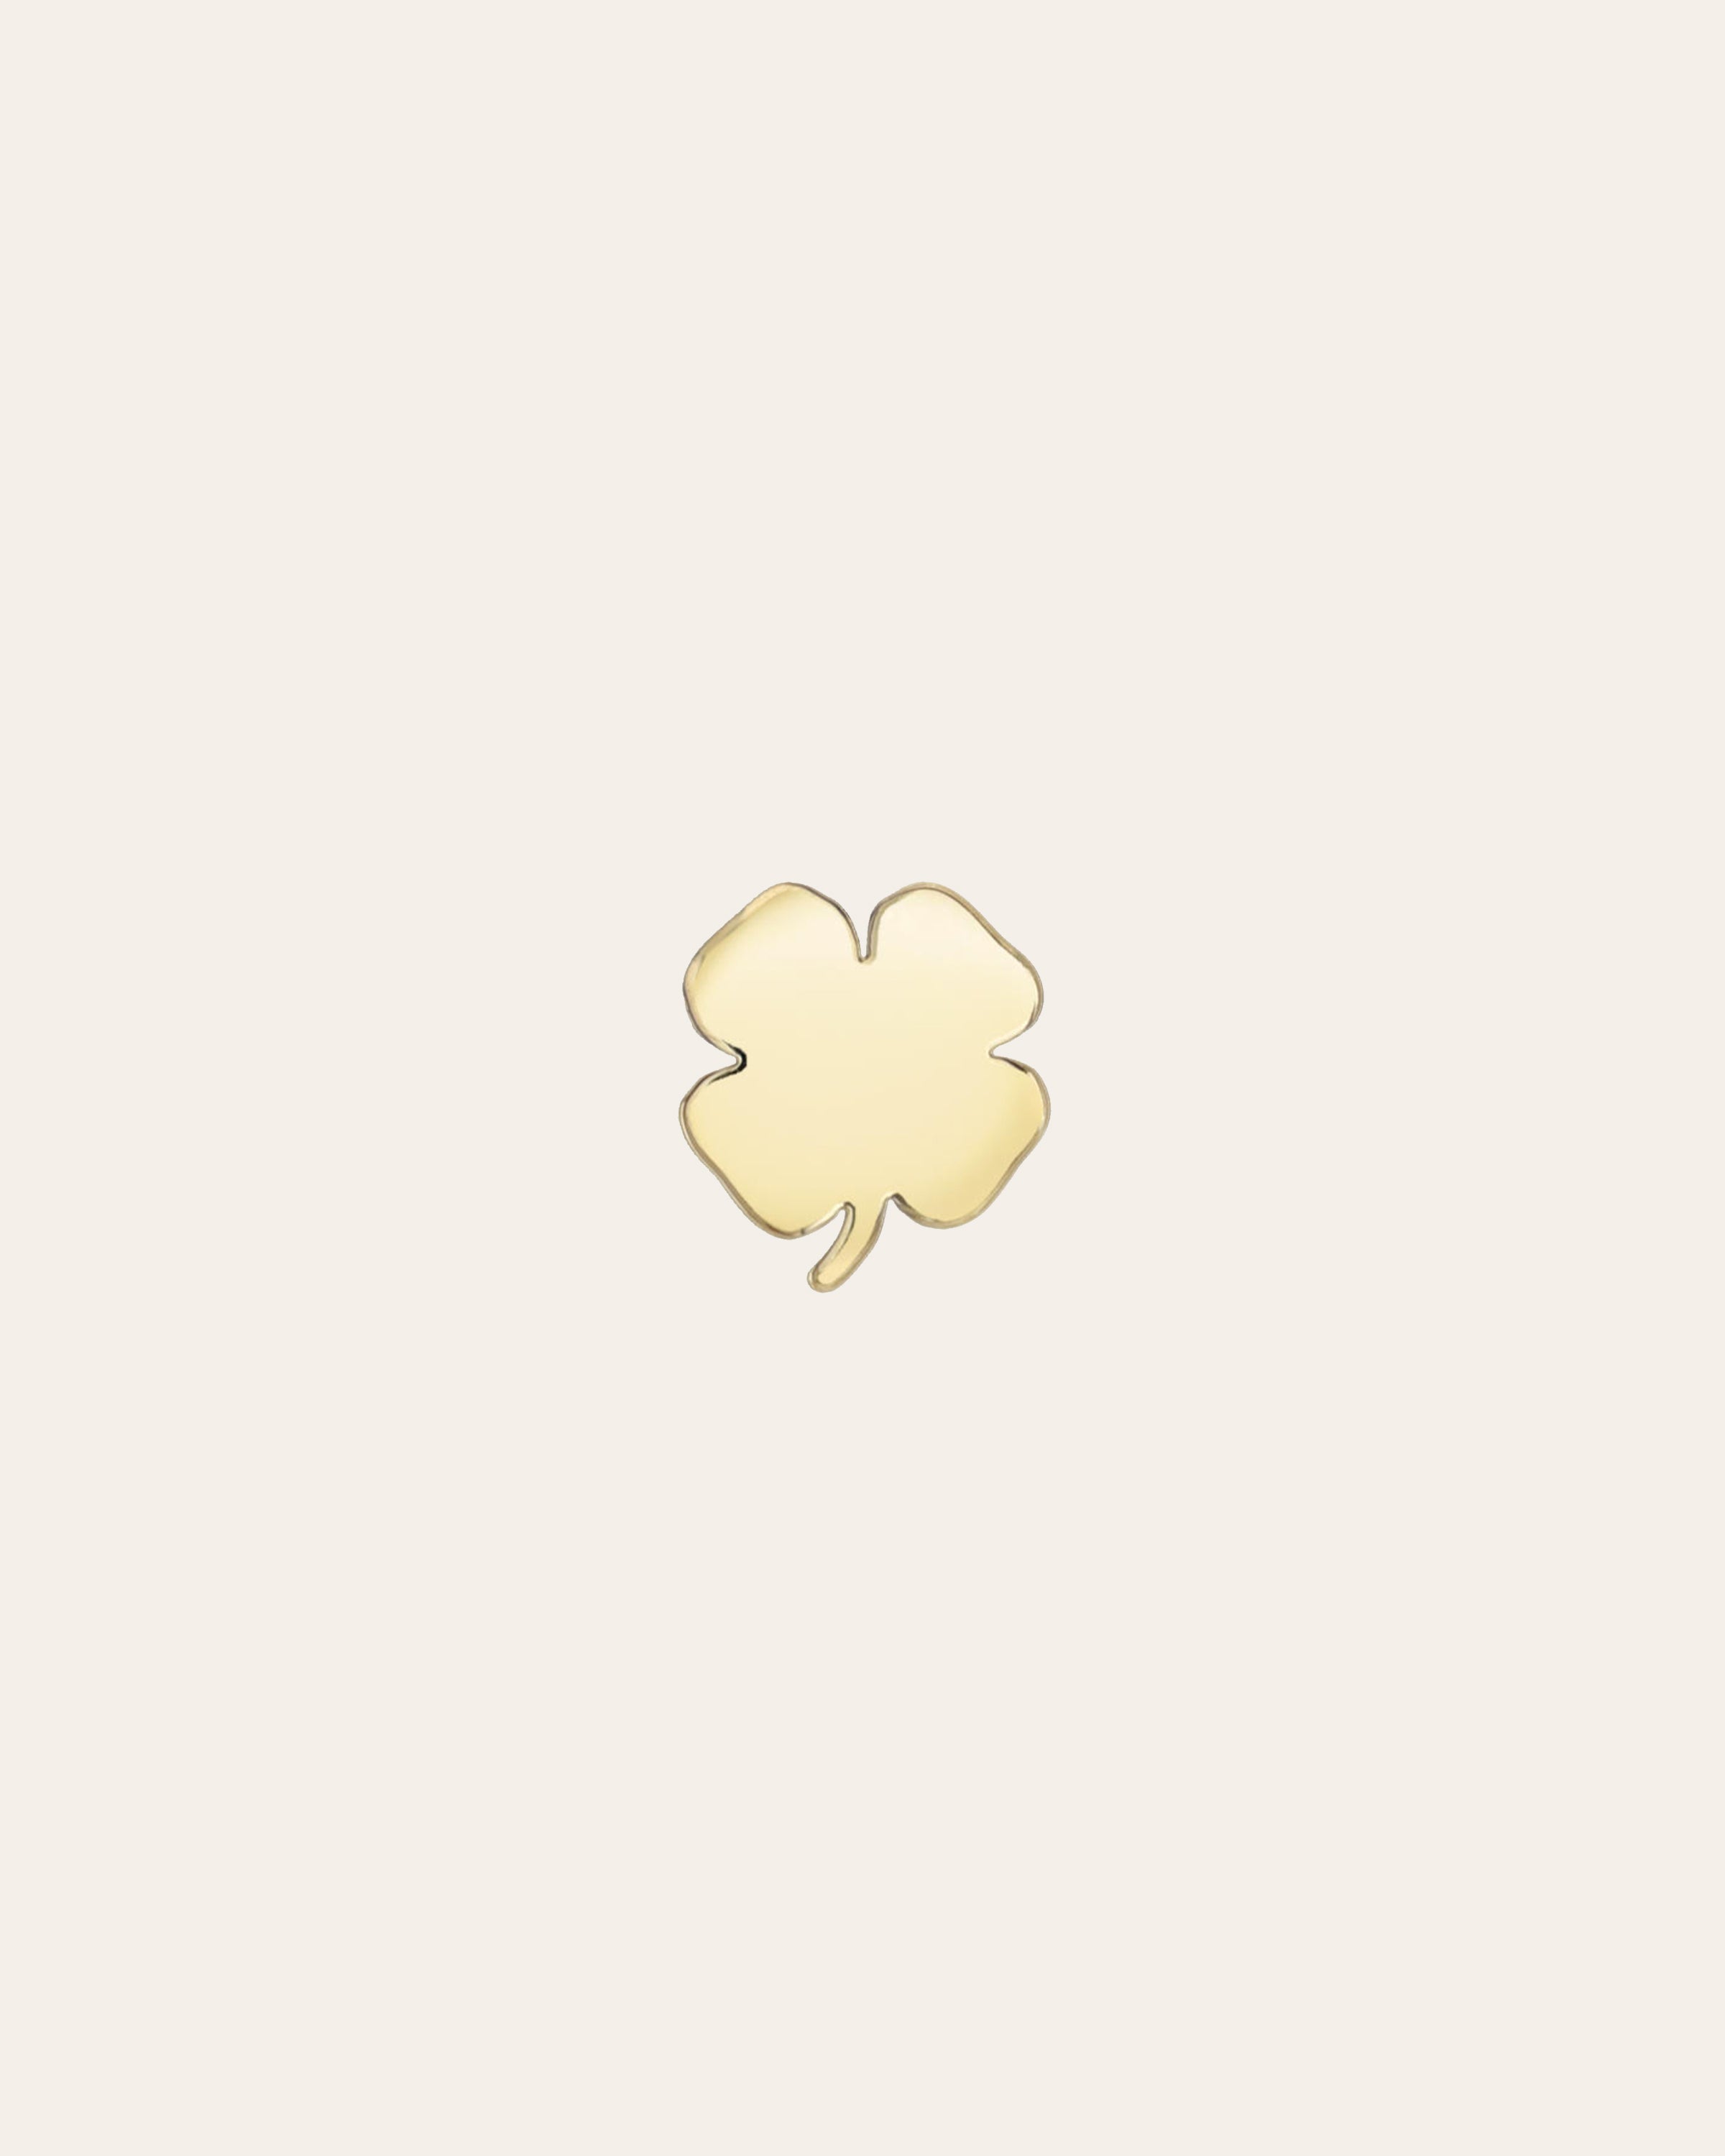 very lucky clover — matching pfp :3